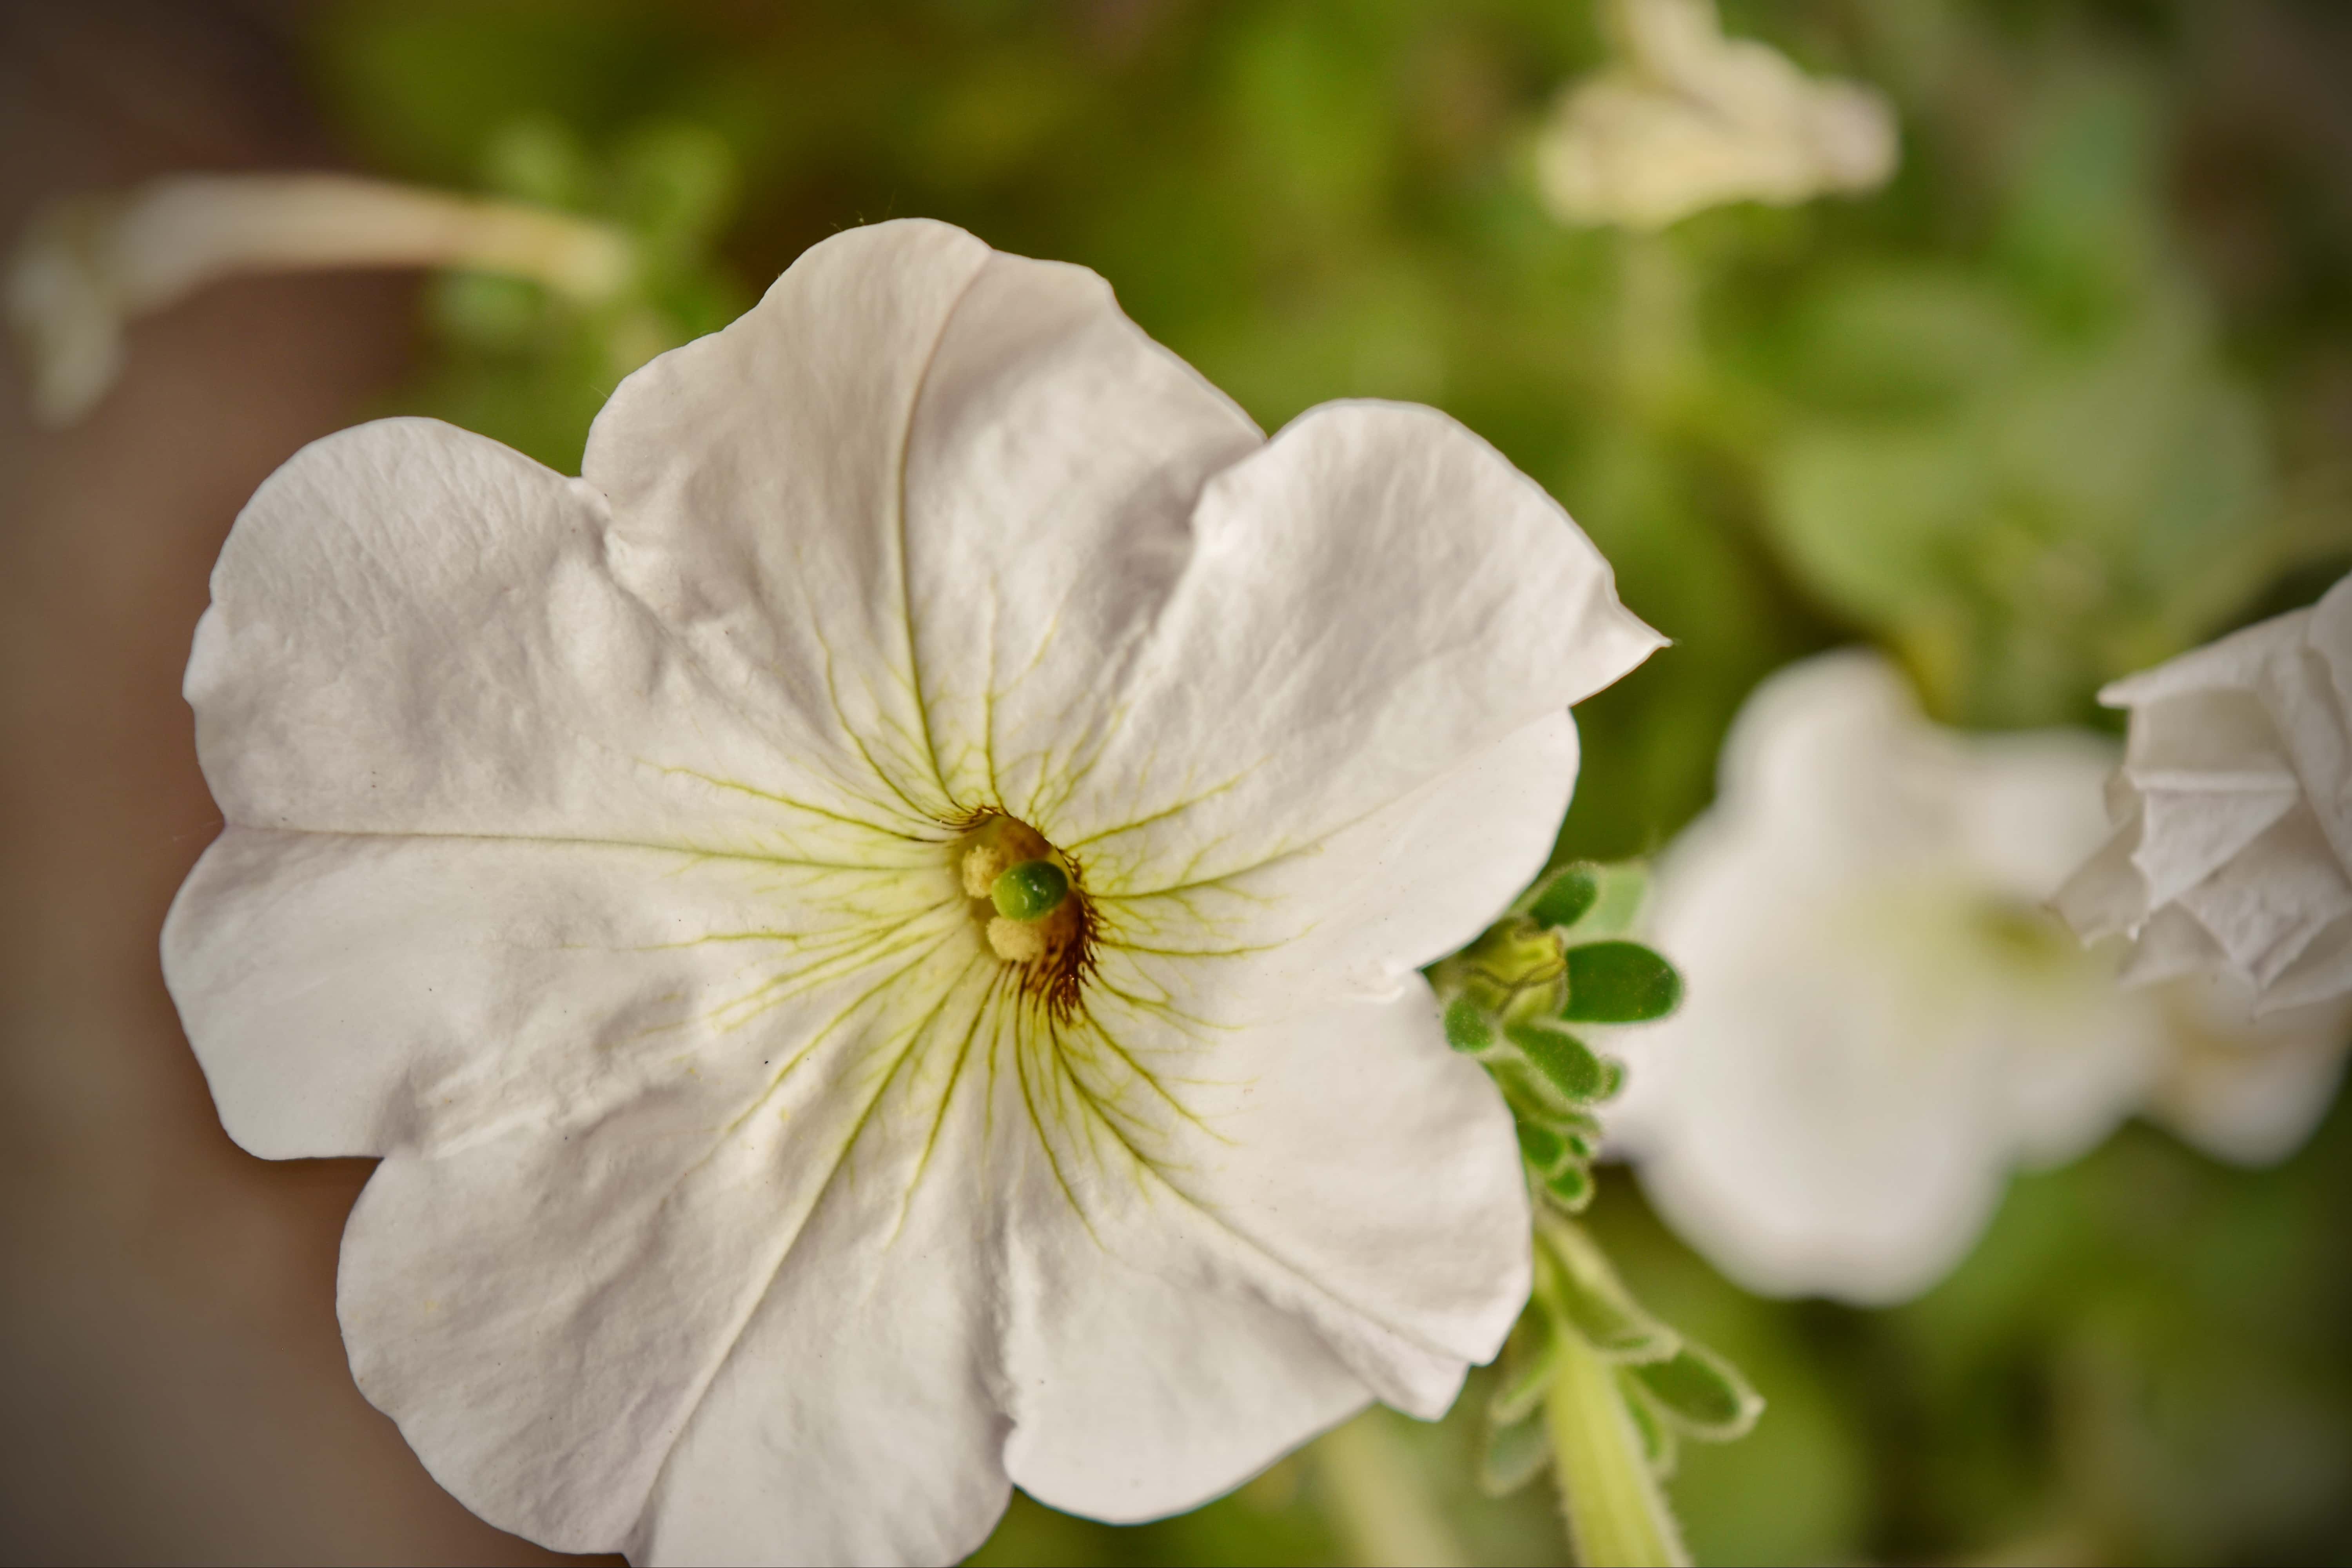 Image libre: fleur blanche, Pétunia, pistil, fermer, feuille, été, jardin,  Floraison, fleur, plante